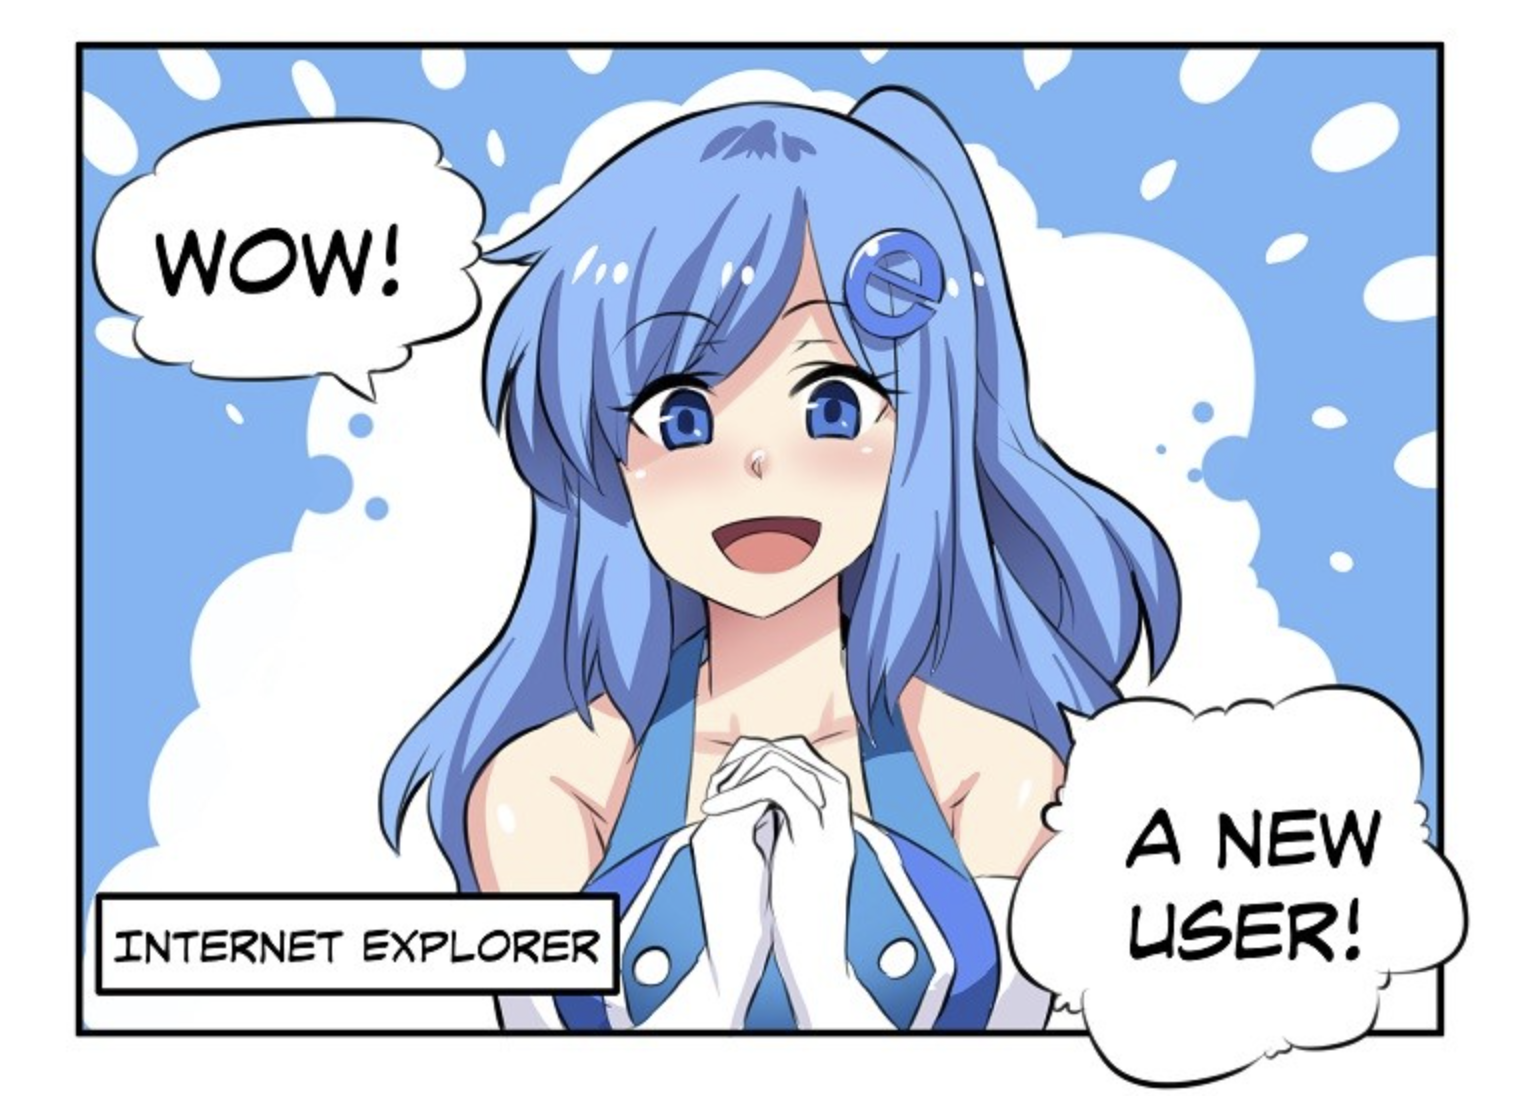 Thumbnail of Internet Explorer manga comic